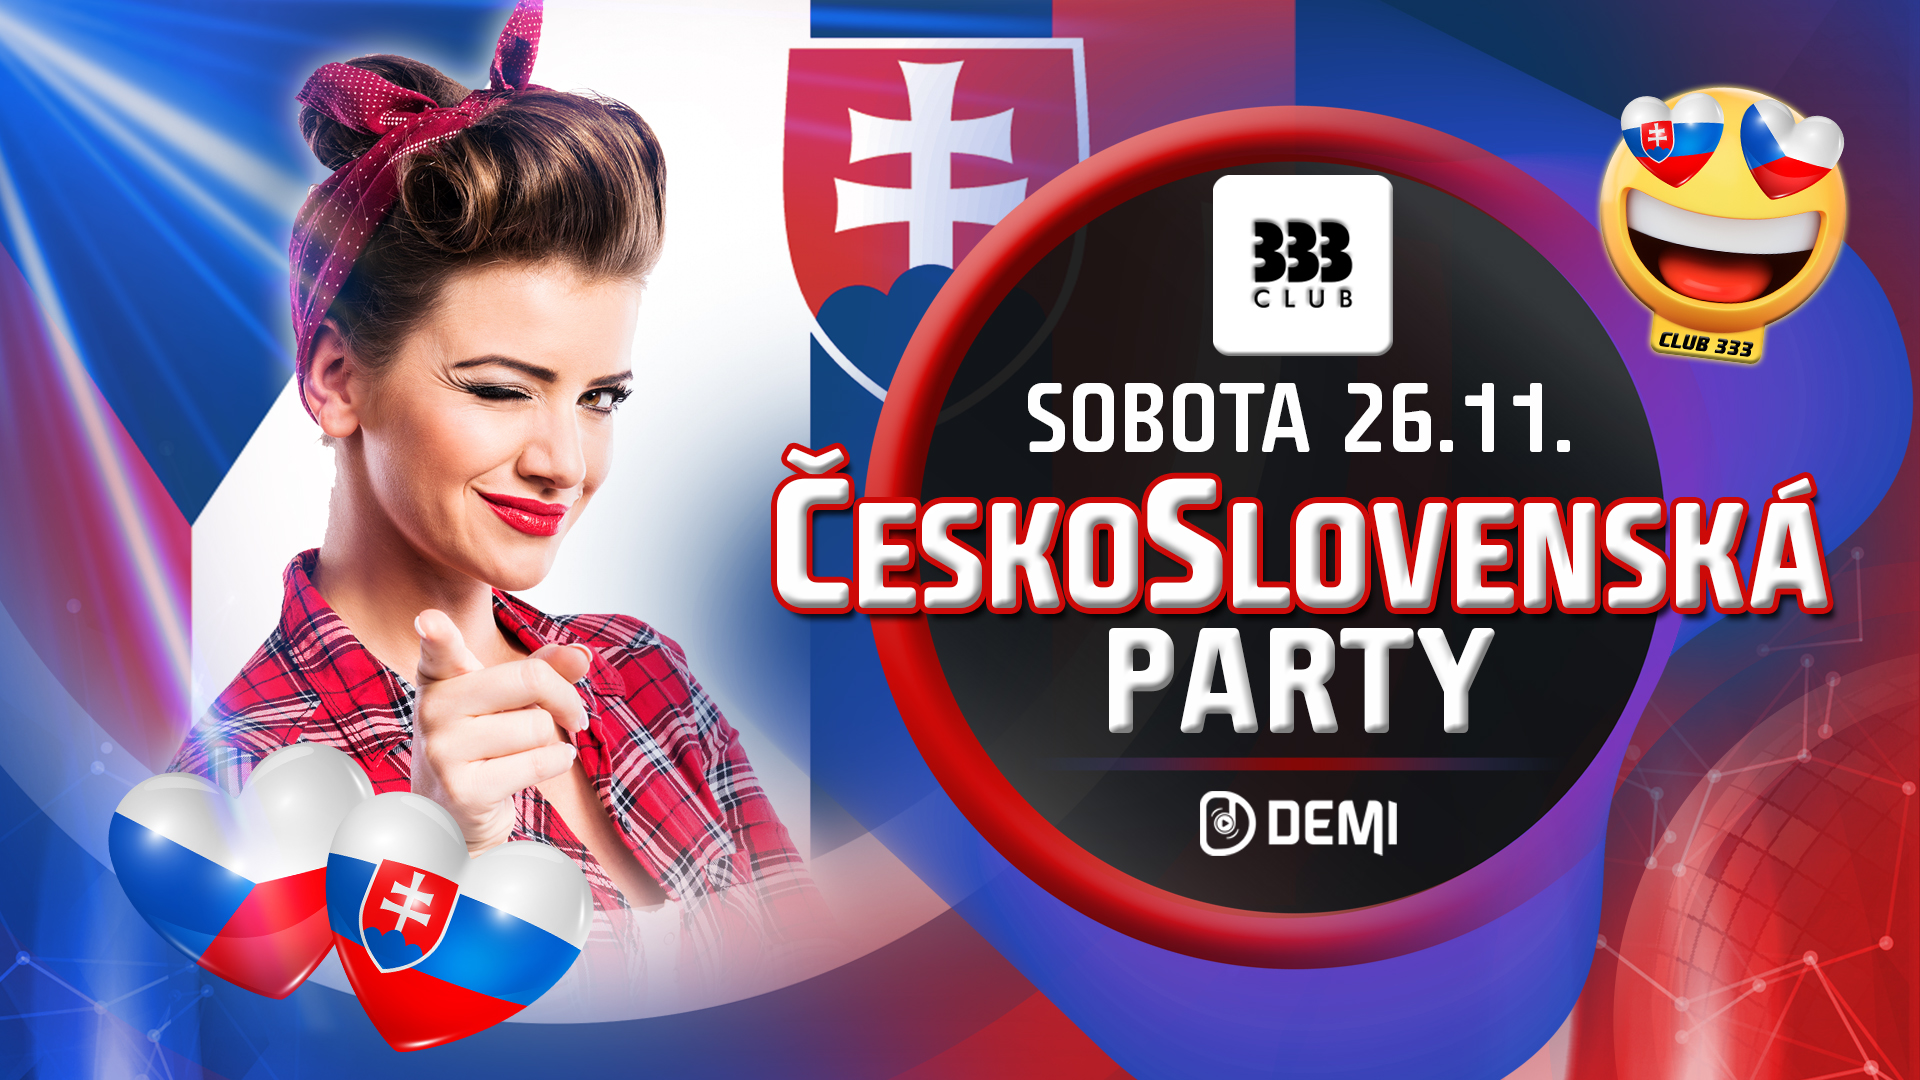 ☆ ČeskoSlovenská Party ☆ 26.11.